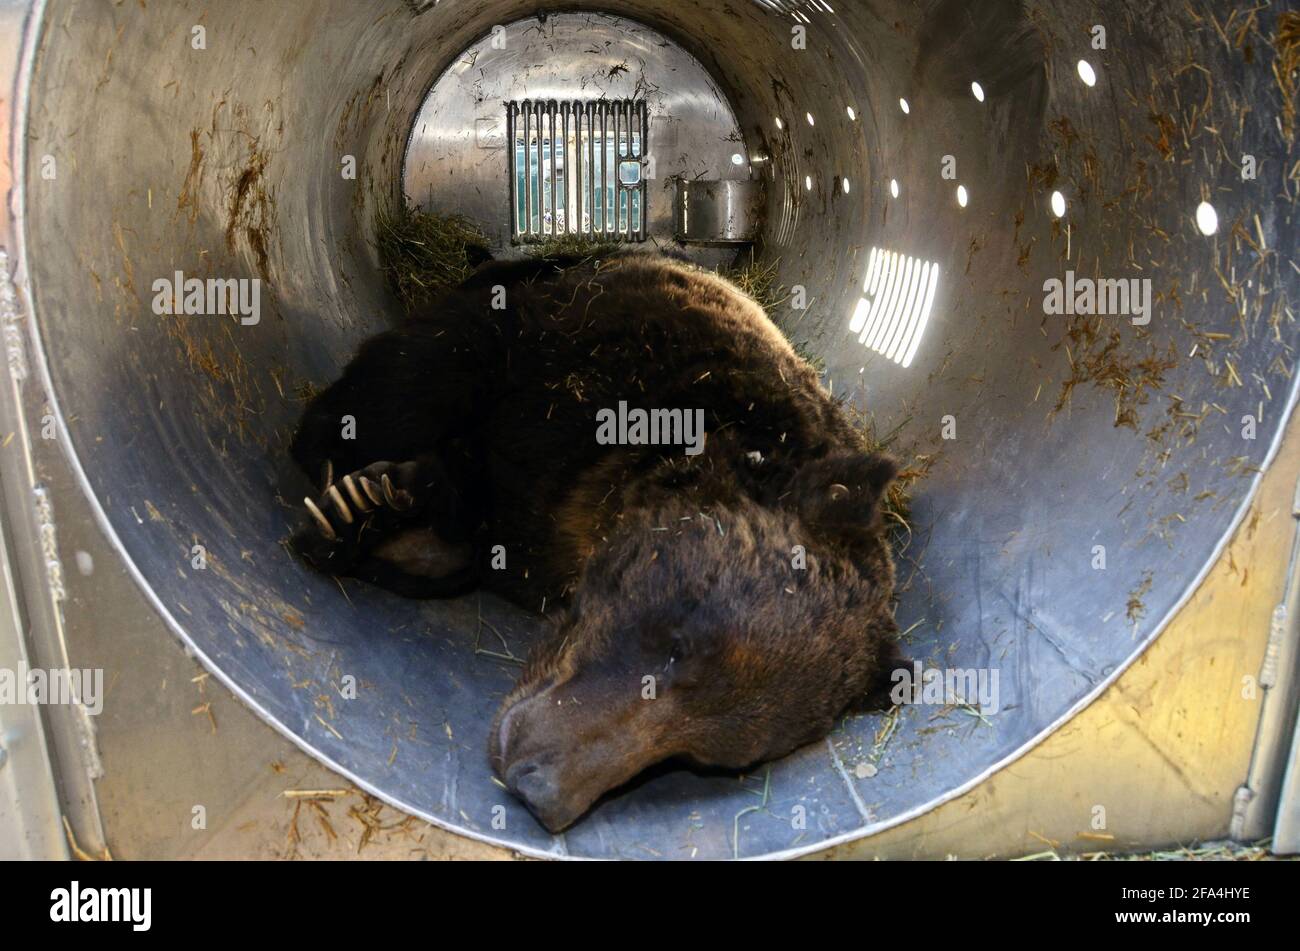 Un oso macho grizzly sedado en el valle de Yaak que está siendo preparado para la reubicación (ver información adicional, foto de Randy Beacham). Foto de stock